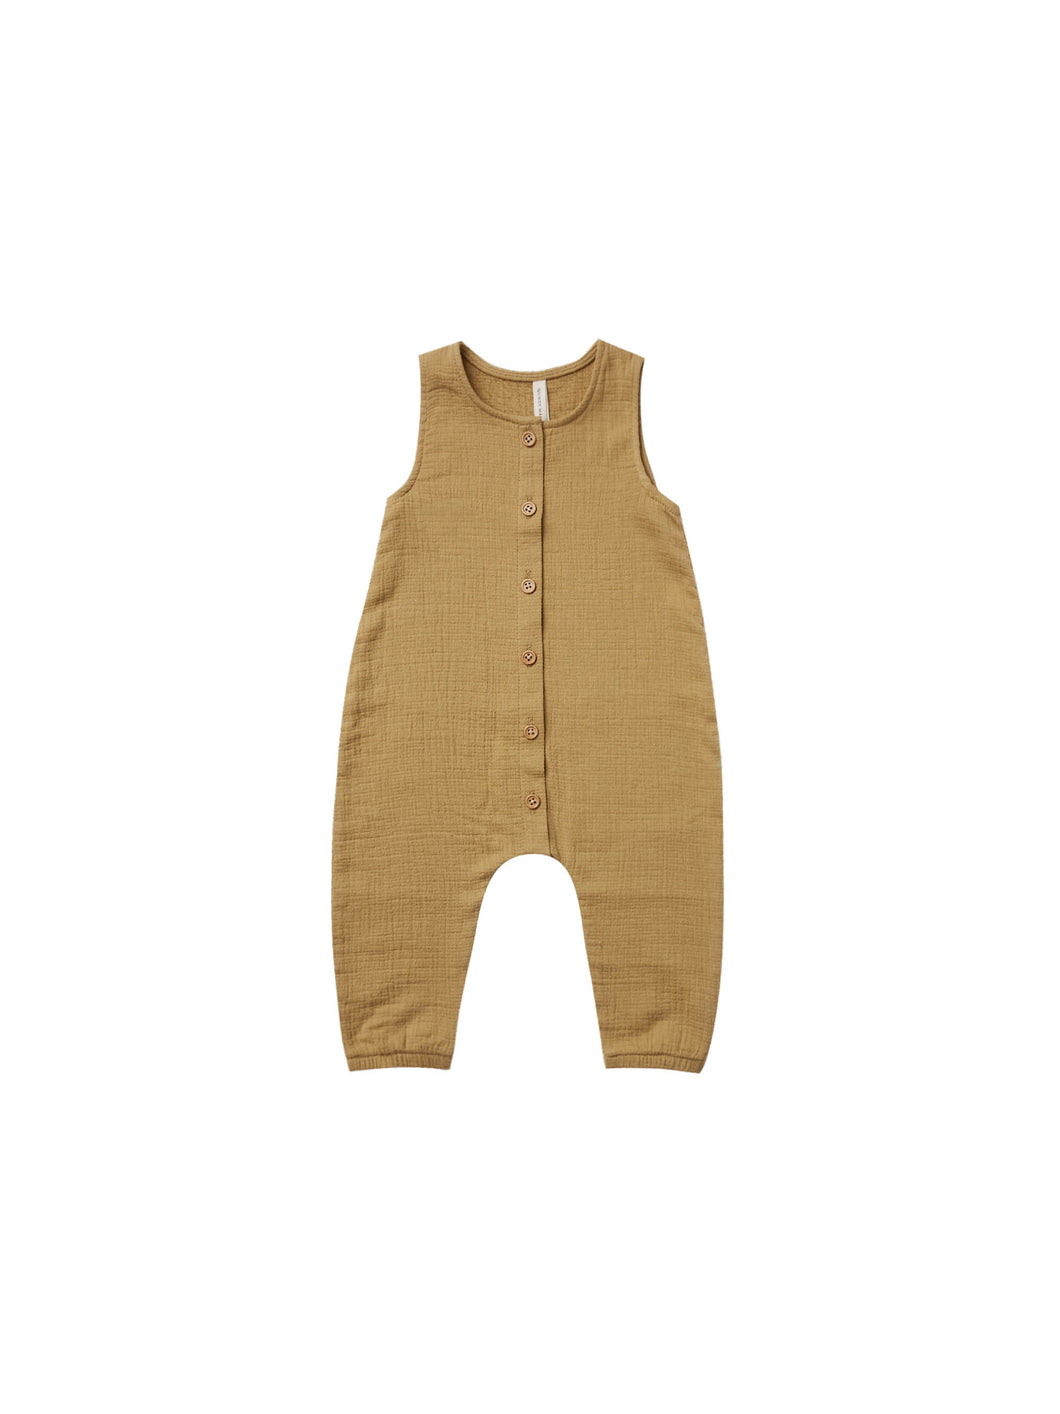 Woven Button Jumpsuit - Gold